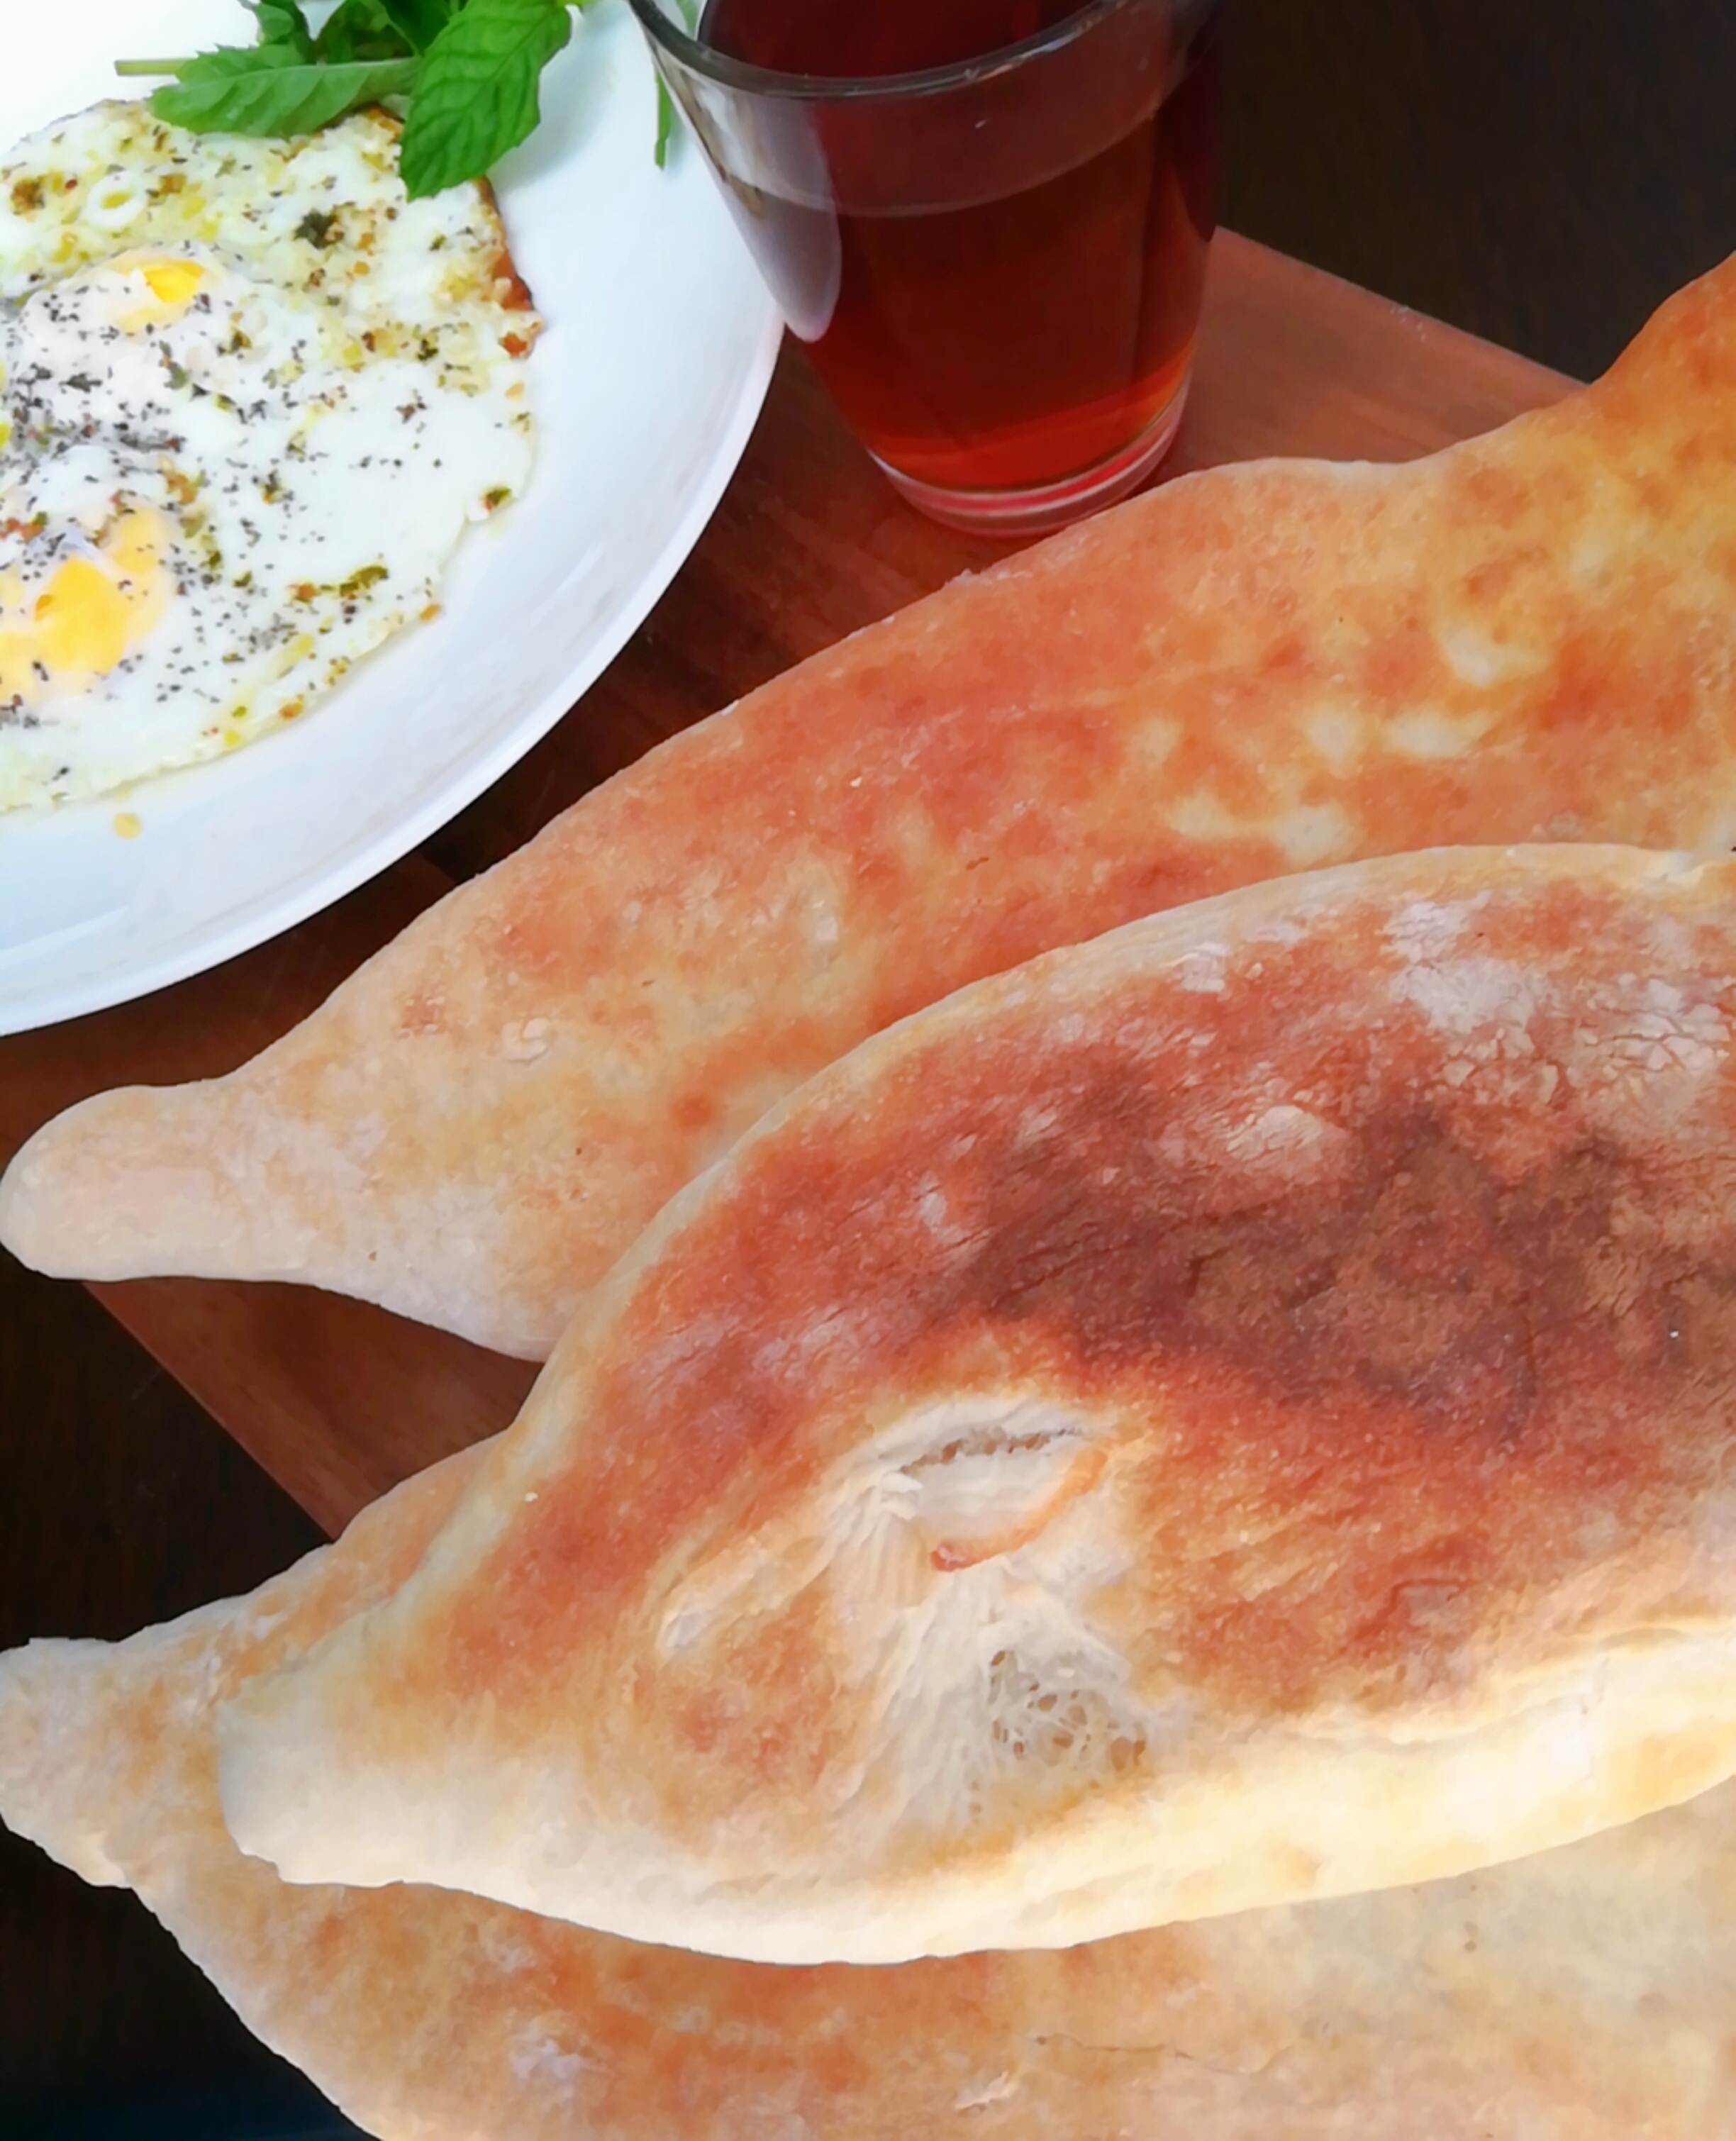 الخبز الحجري العراقي -خبز الصمون العراقي